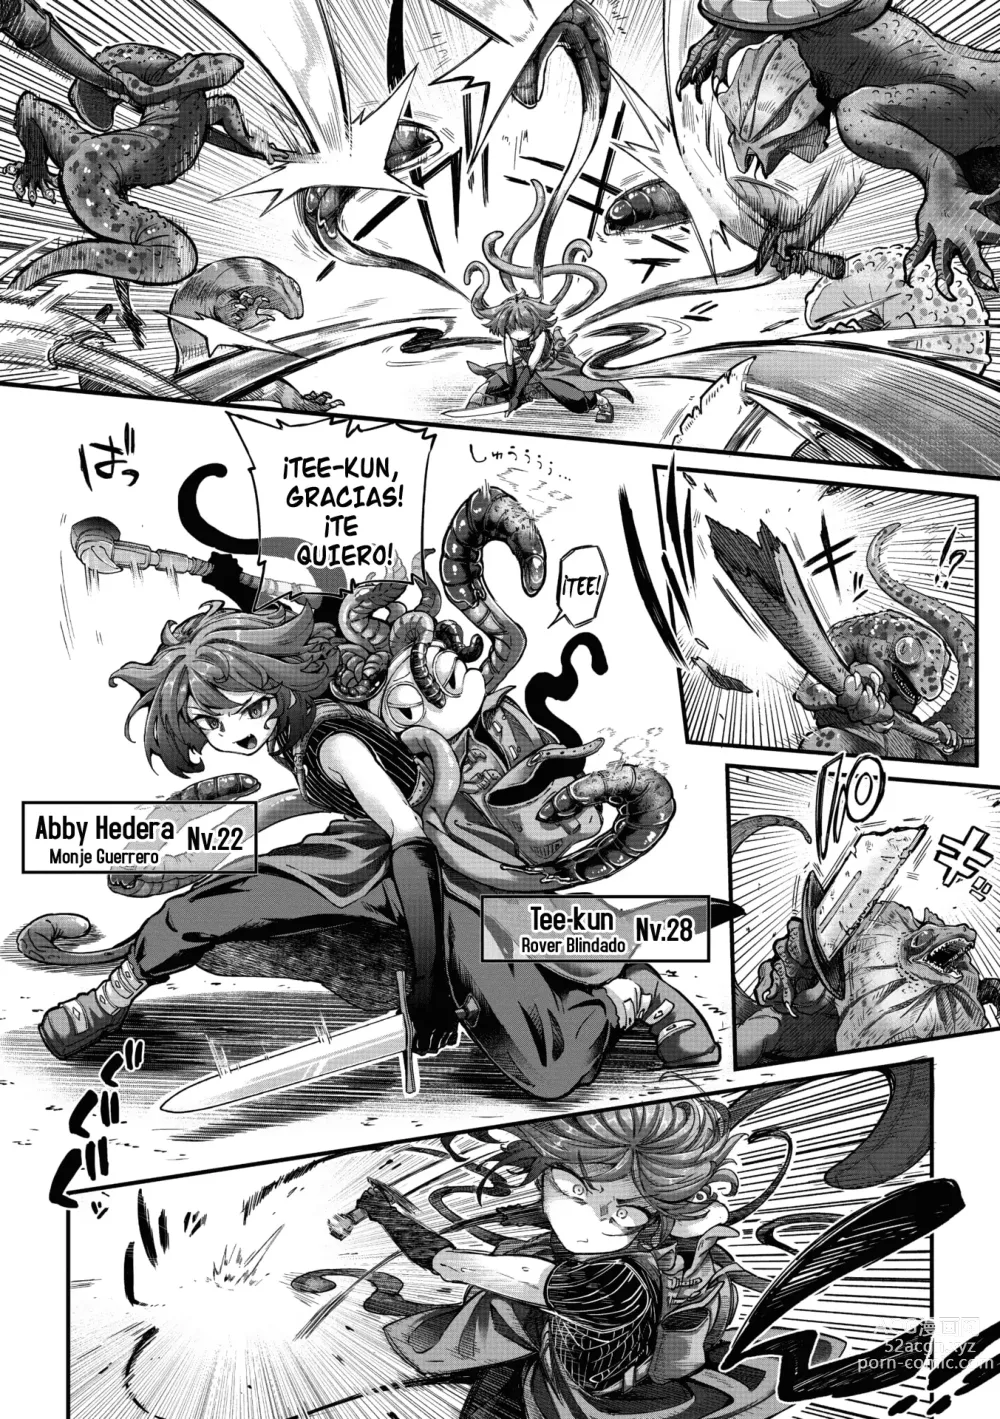 Page 2 of manga La guerrera y el tentáculo Cap 03 Monje-chan y Tentaculo Blindado-kun